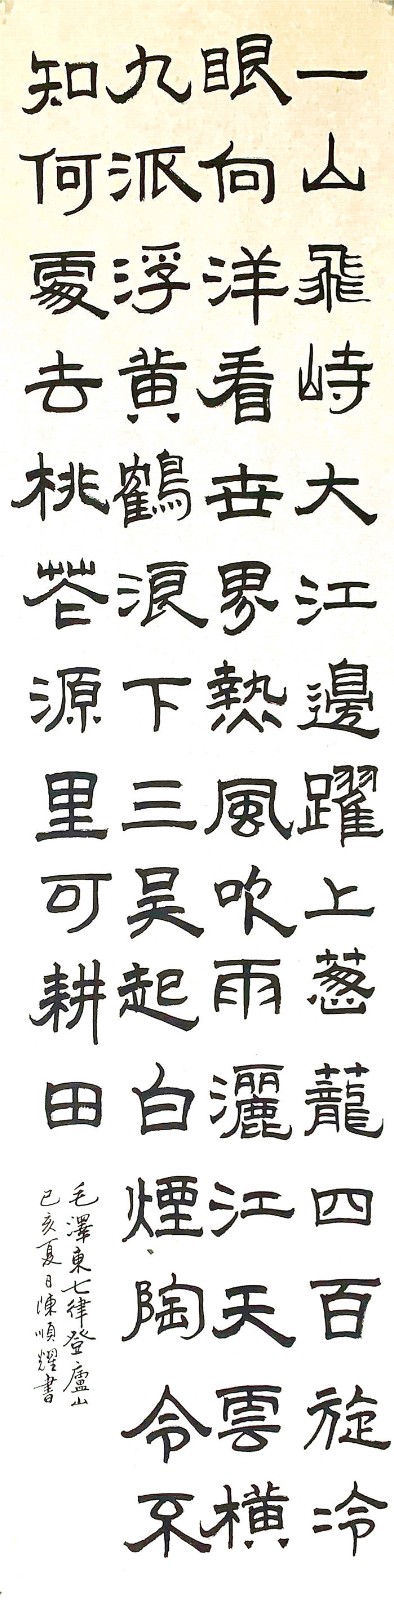 陈顺耀著名书画家 喜迎新中国成立70周年华诞—2019陈顺耀的中国书法、绘画作品展示